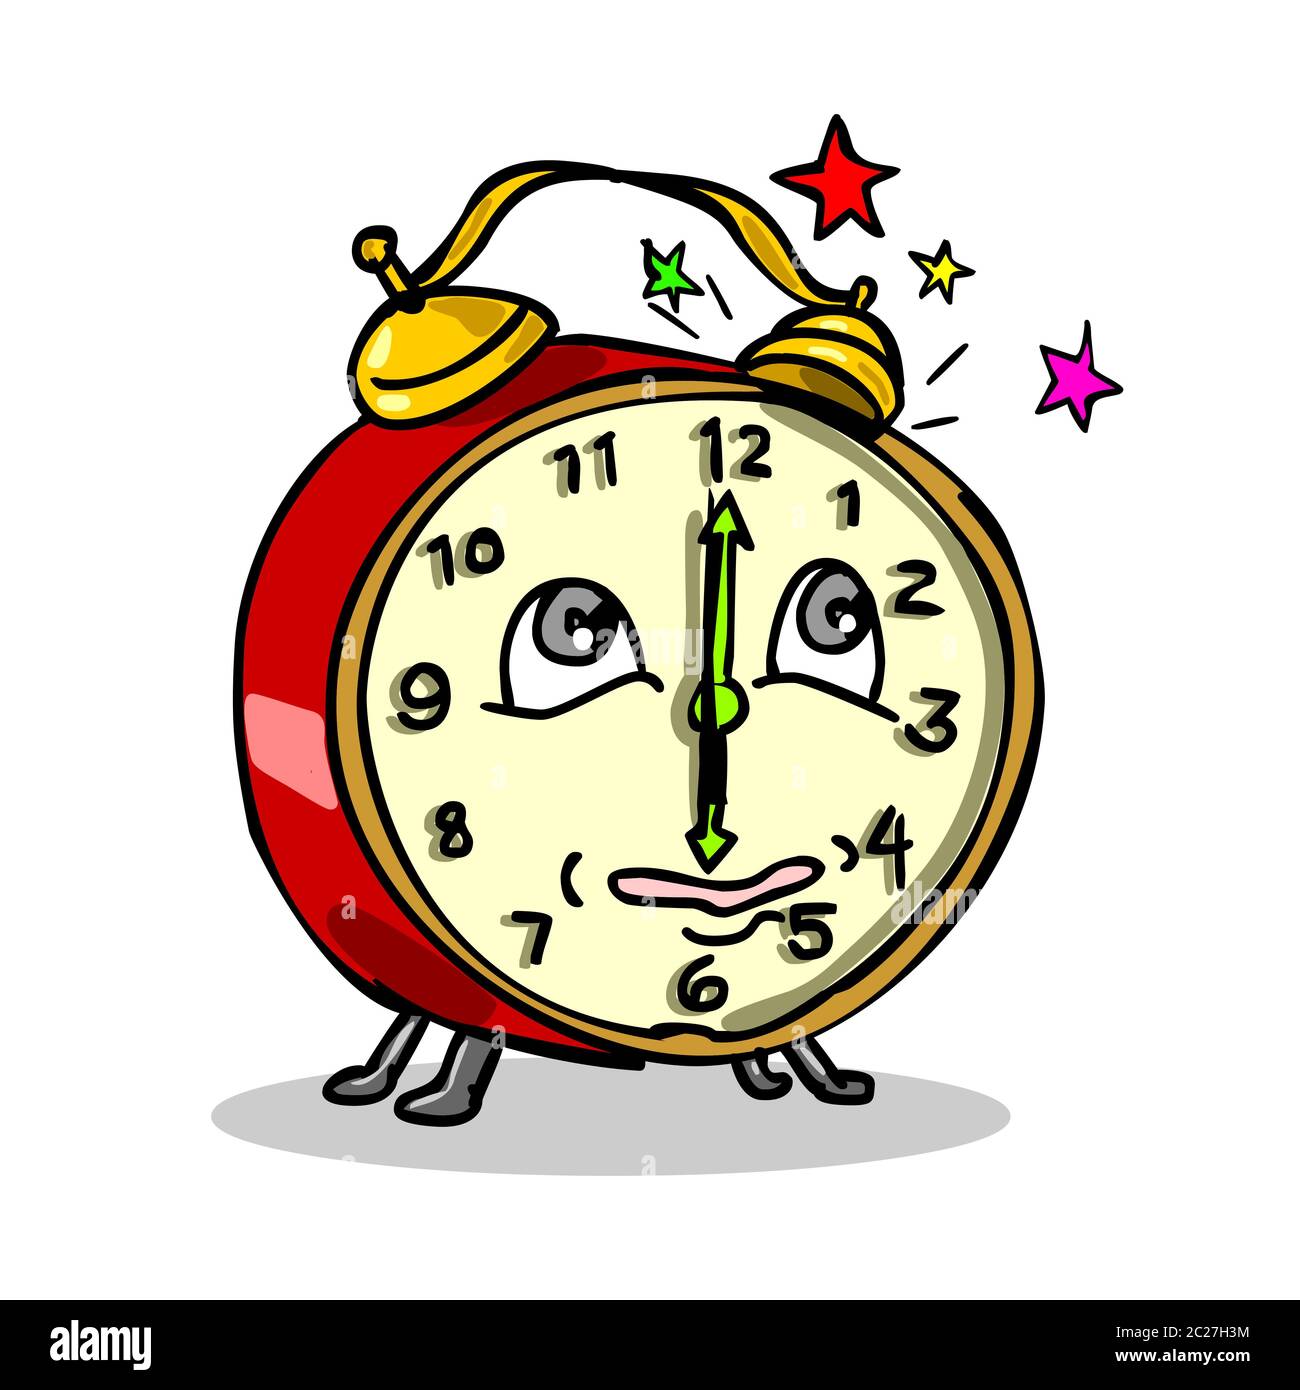 Ilustración de estilo de dibujos animados de un reloj despertador